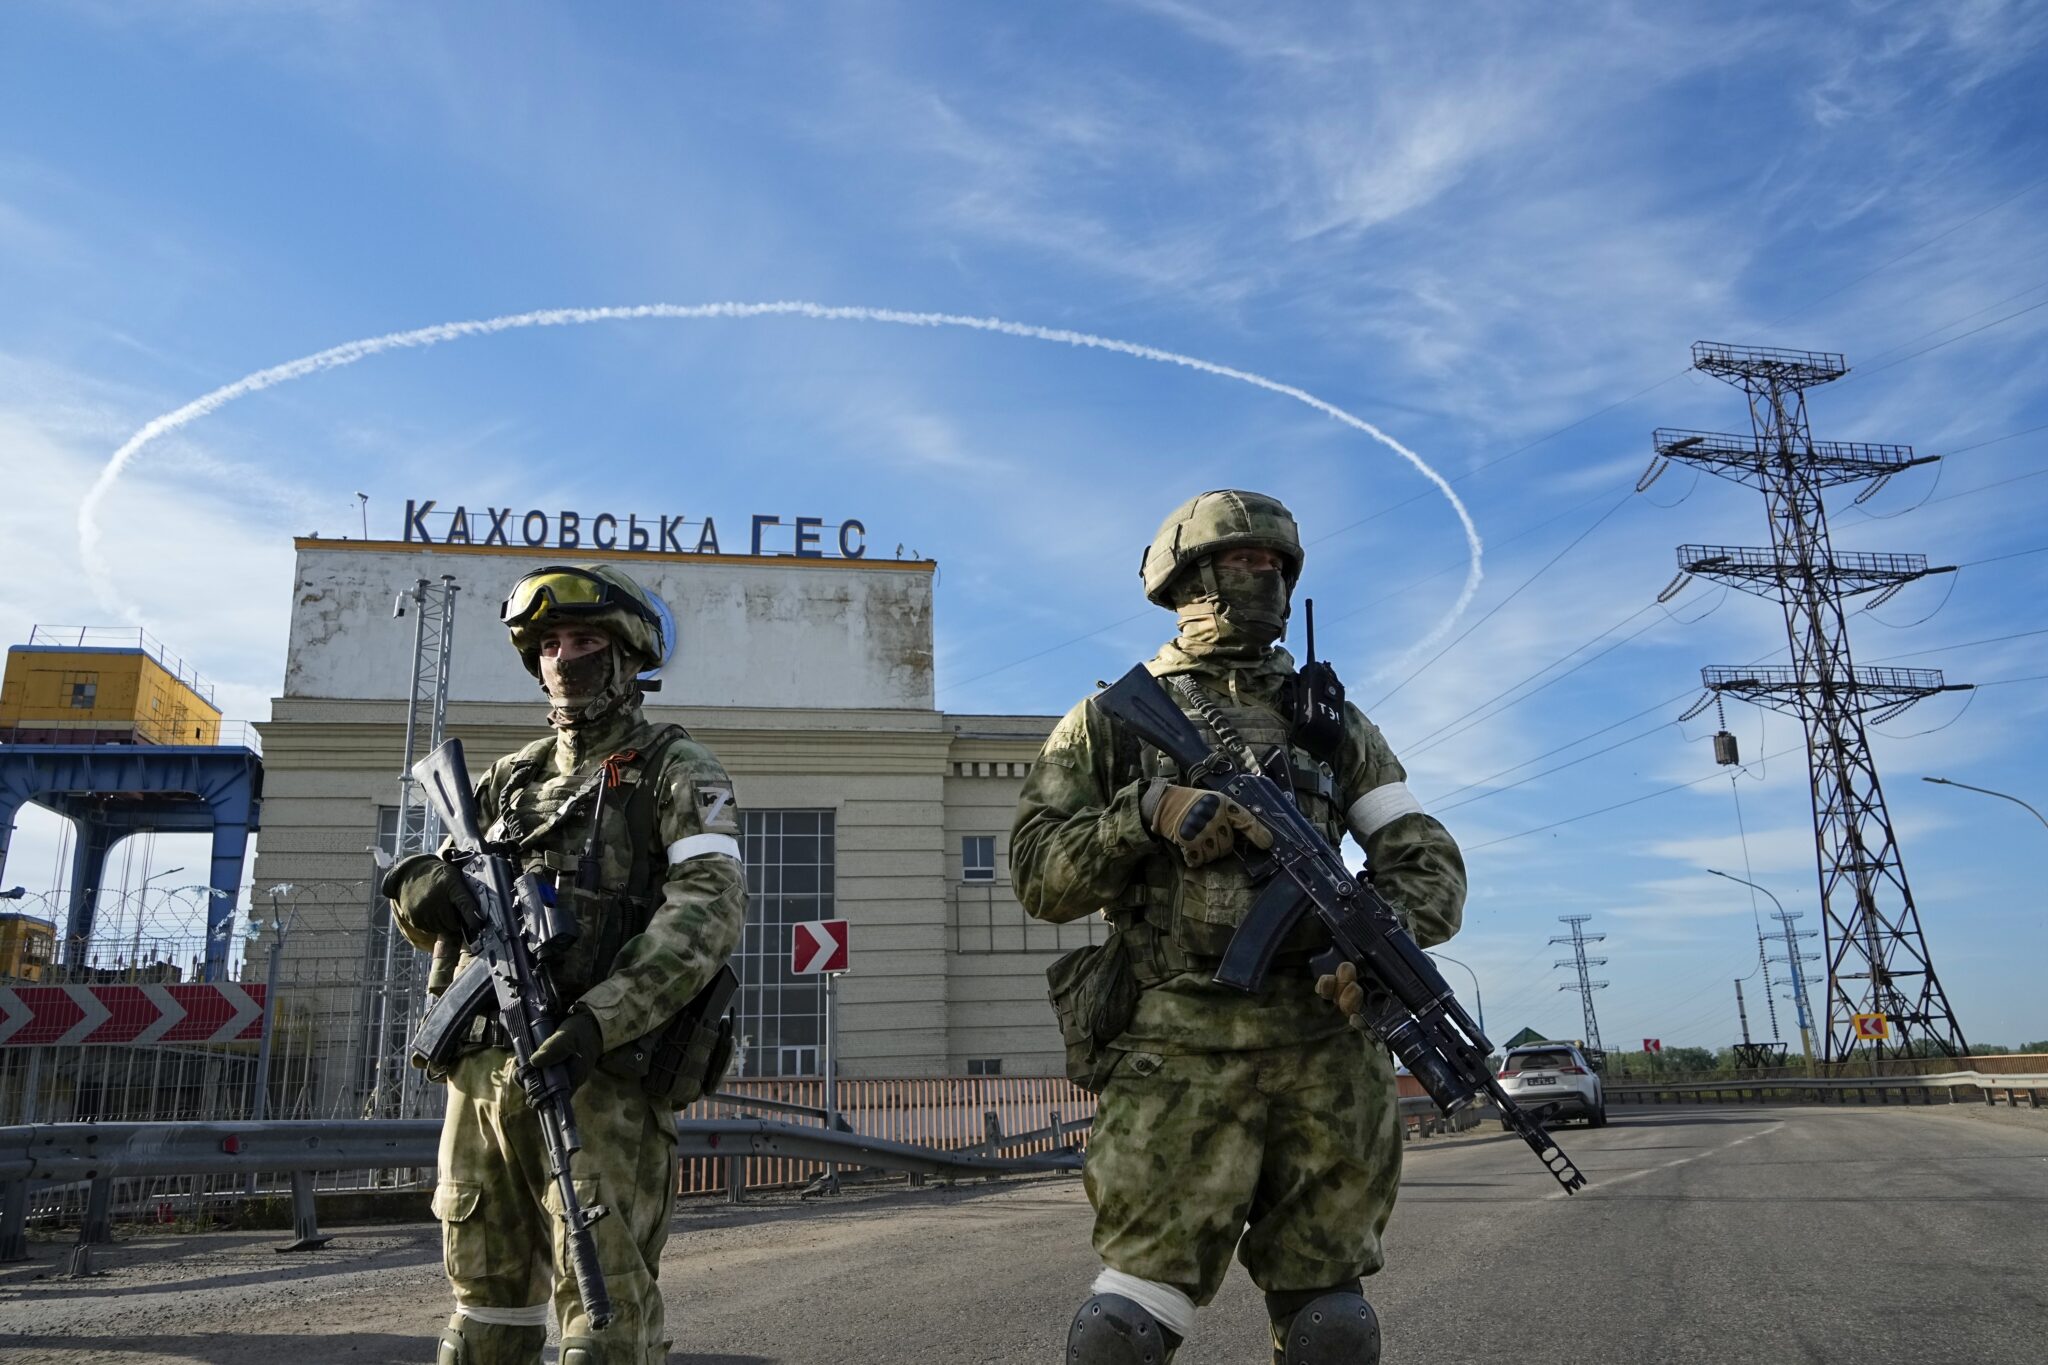 Российские военные на территории Каховской ГЭС в Херсонской области. Фото AP/Scanpix/Leta.